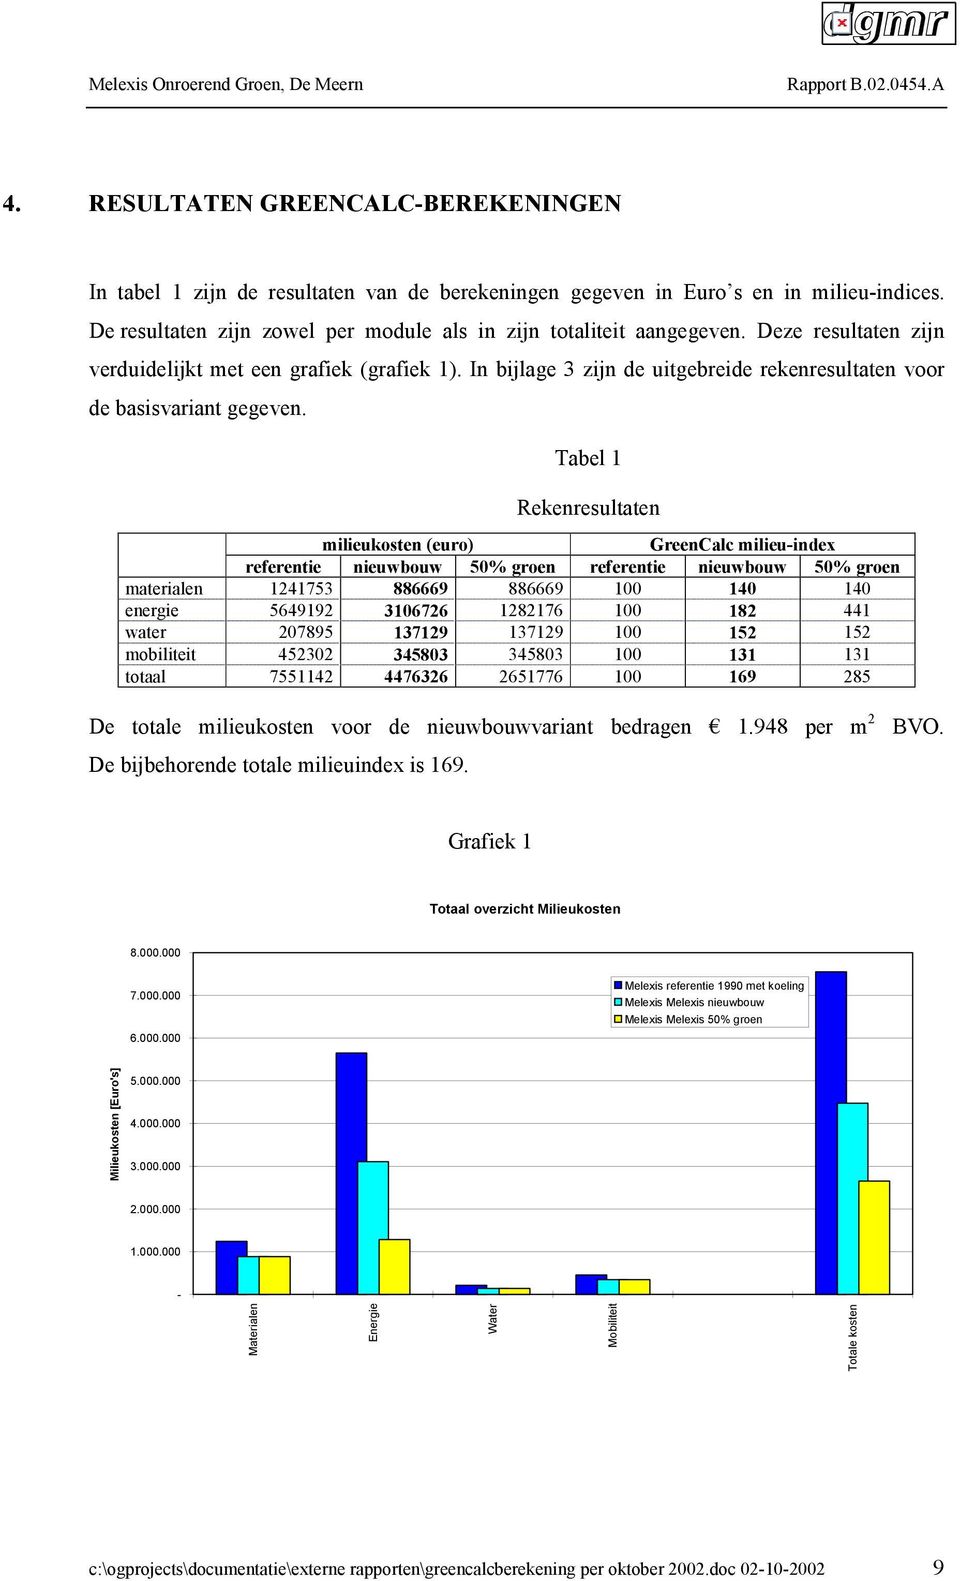 Tabel 1 Rekenresultaten milieukosten (euro) GreenCalc milieu-index referentie nieuwbouw 50% groen referentie nieuwbouw 50% groen materialen 1241753 886669 886669 100 140 140 energie 5649192 3106726